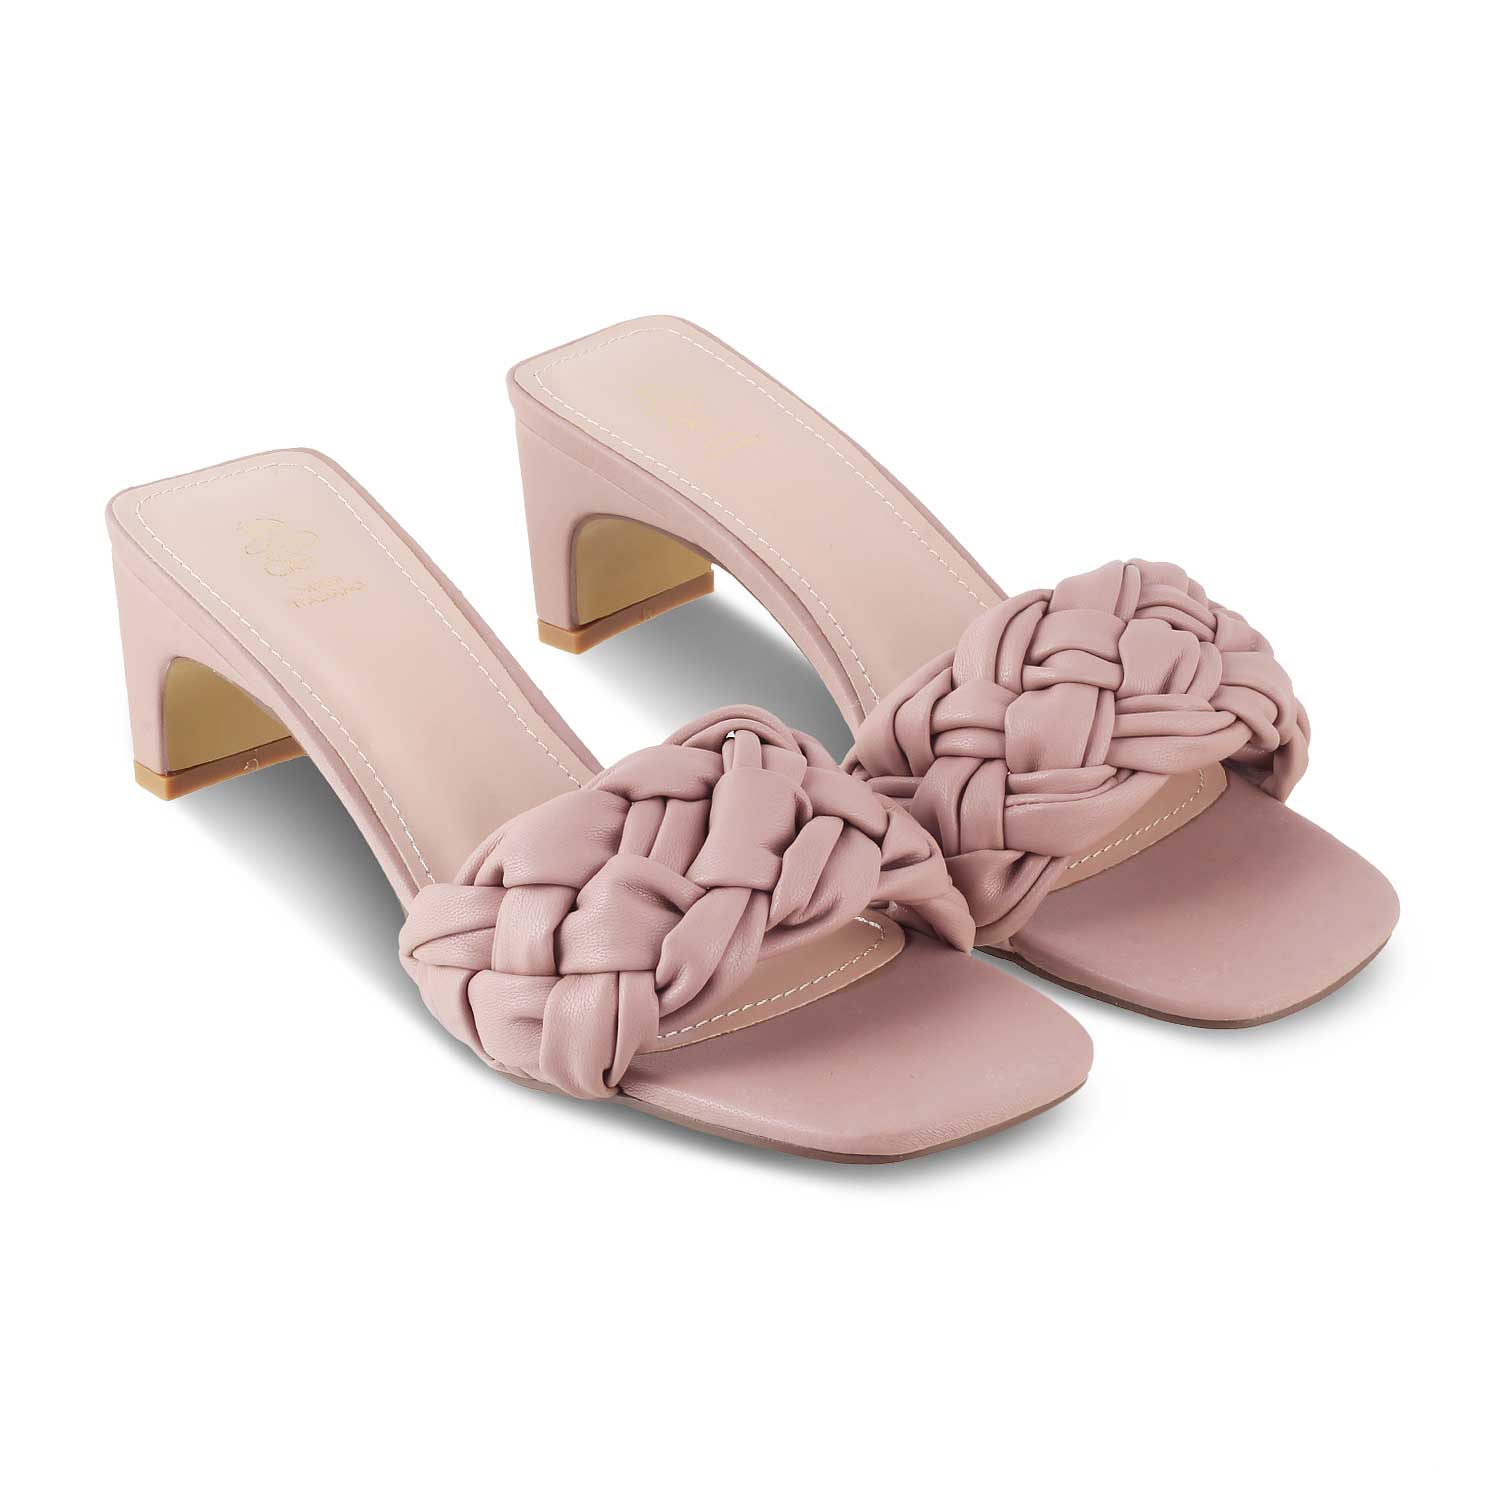 The Pragues Pink Women's Dress Heel Sandals Tresmode